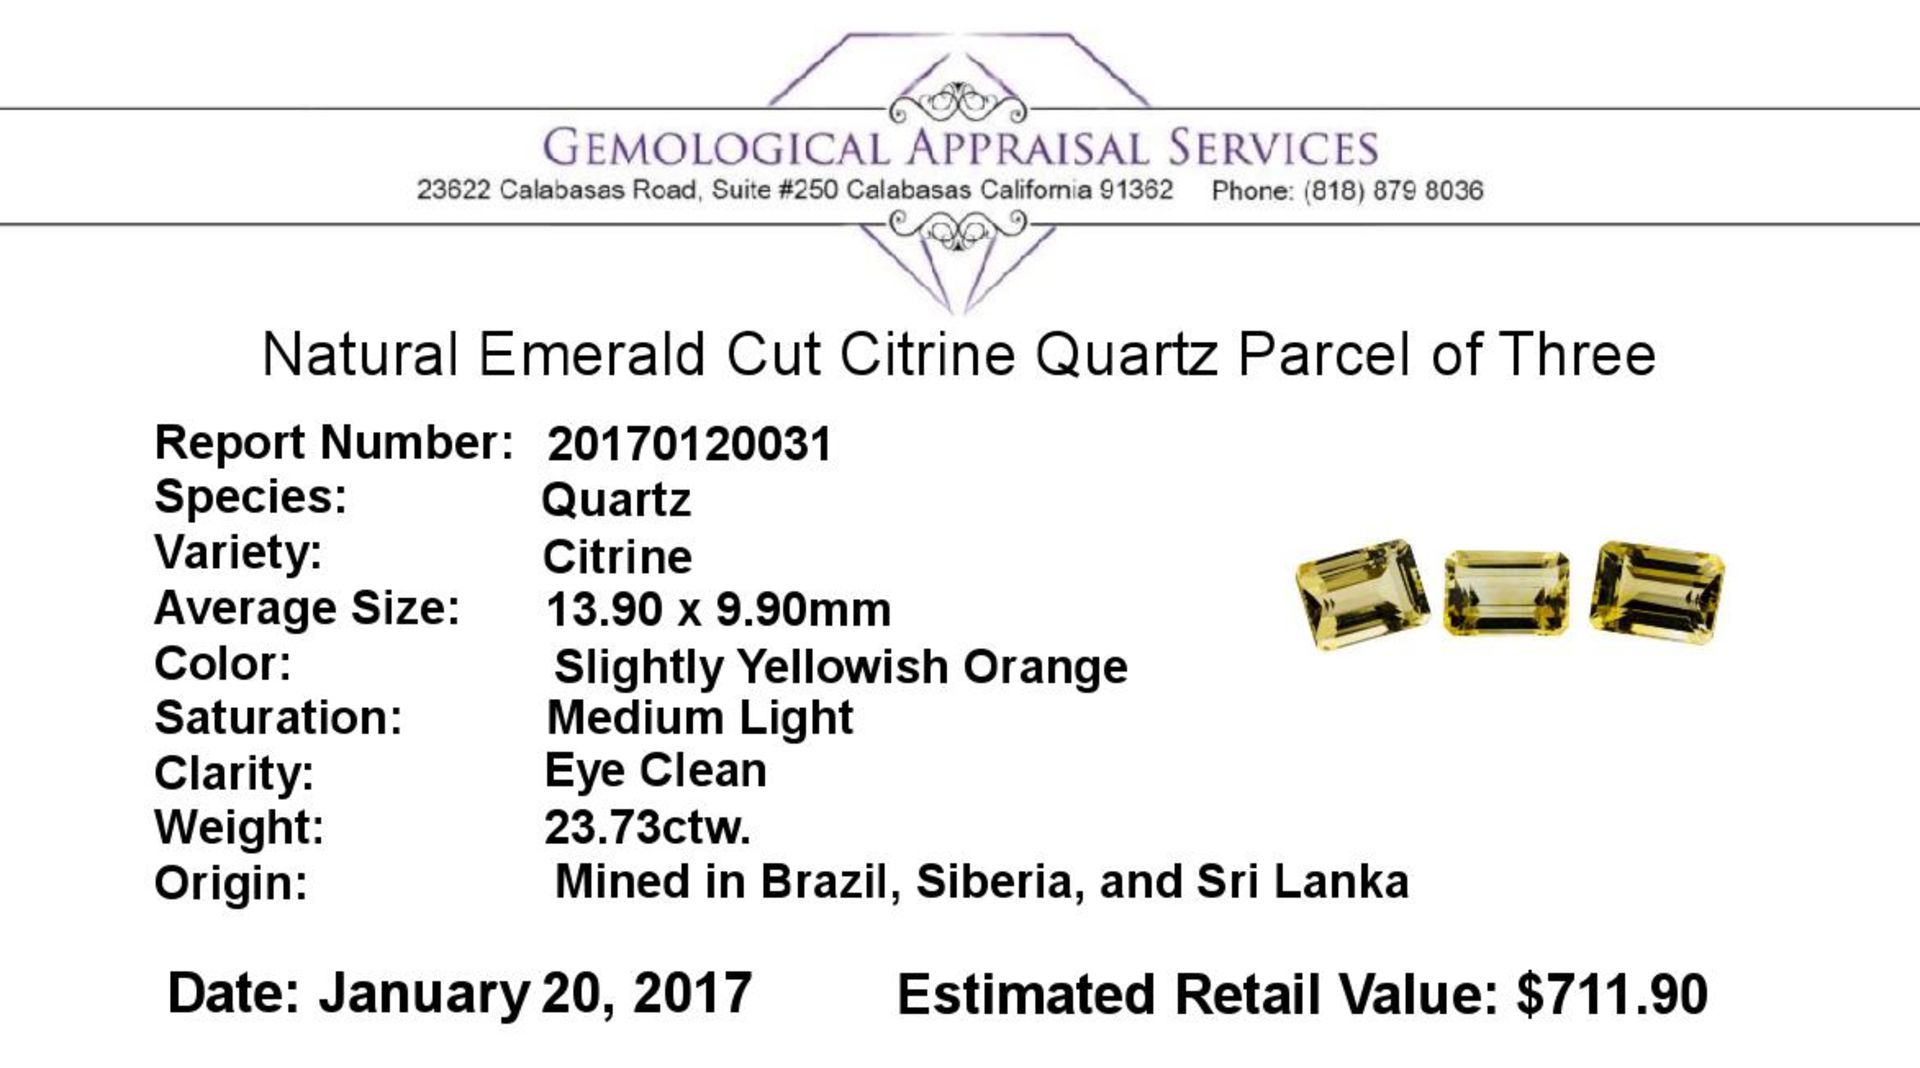 23.73ctw.Natural Emerald Cut Citrine Quartz Parcel of Three - Image 3 of 3